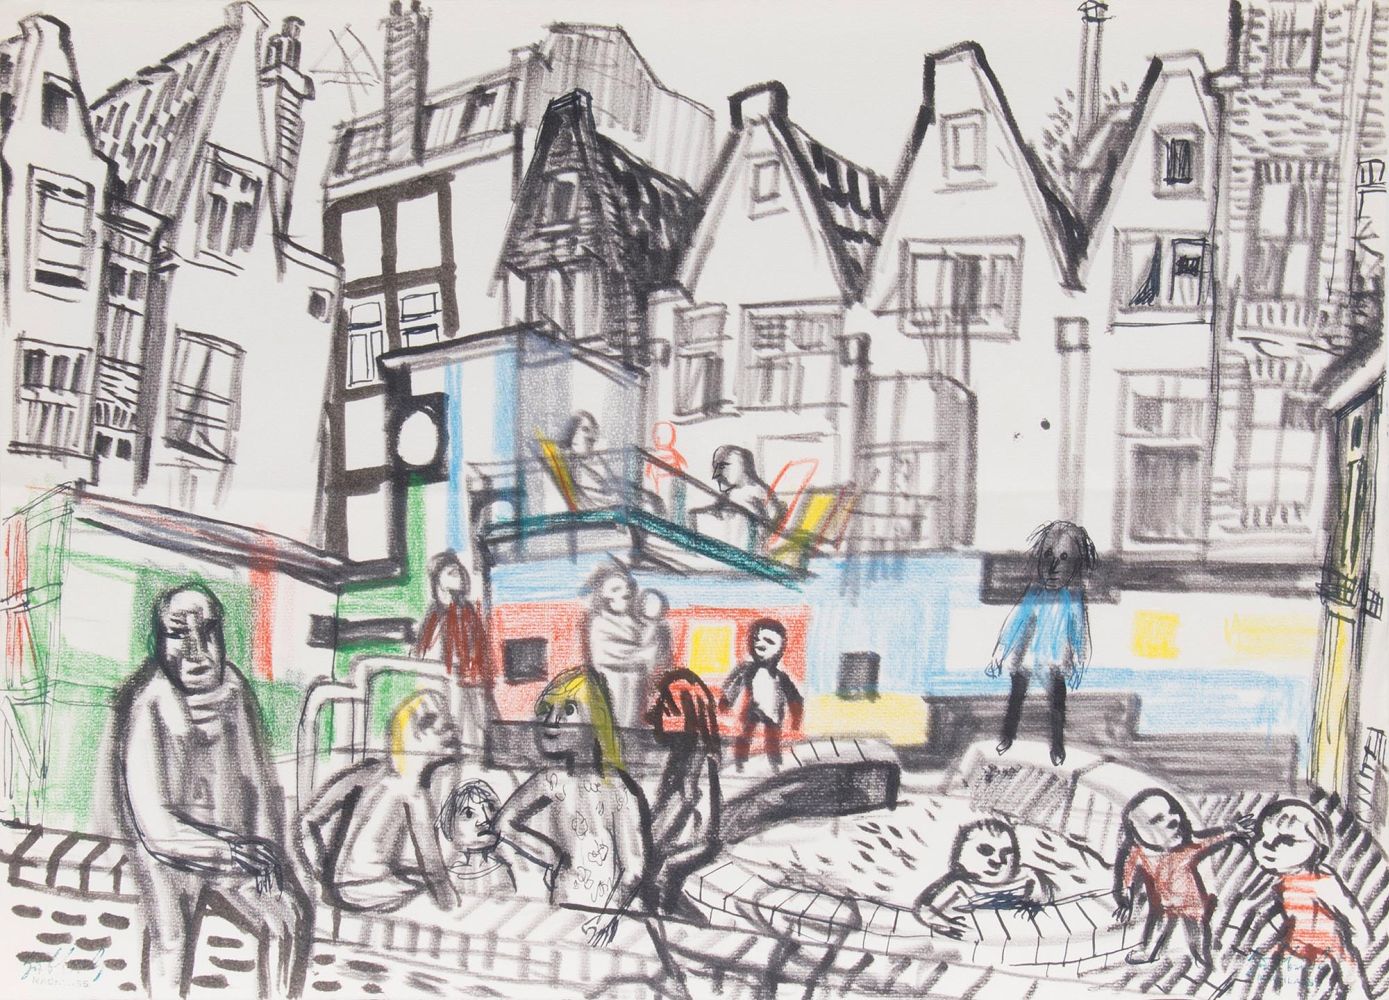 Kinderspielplatz in Amsterdam und Markt am Meer - Bild 2